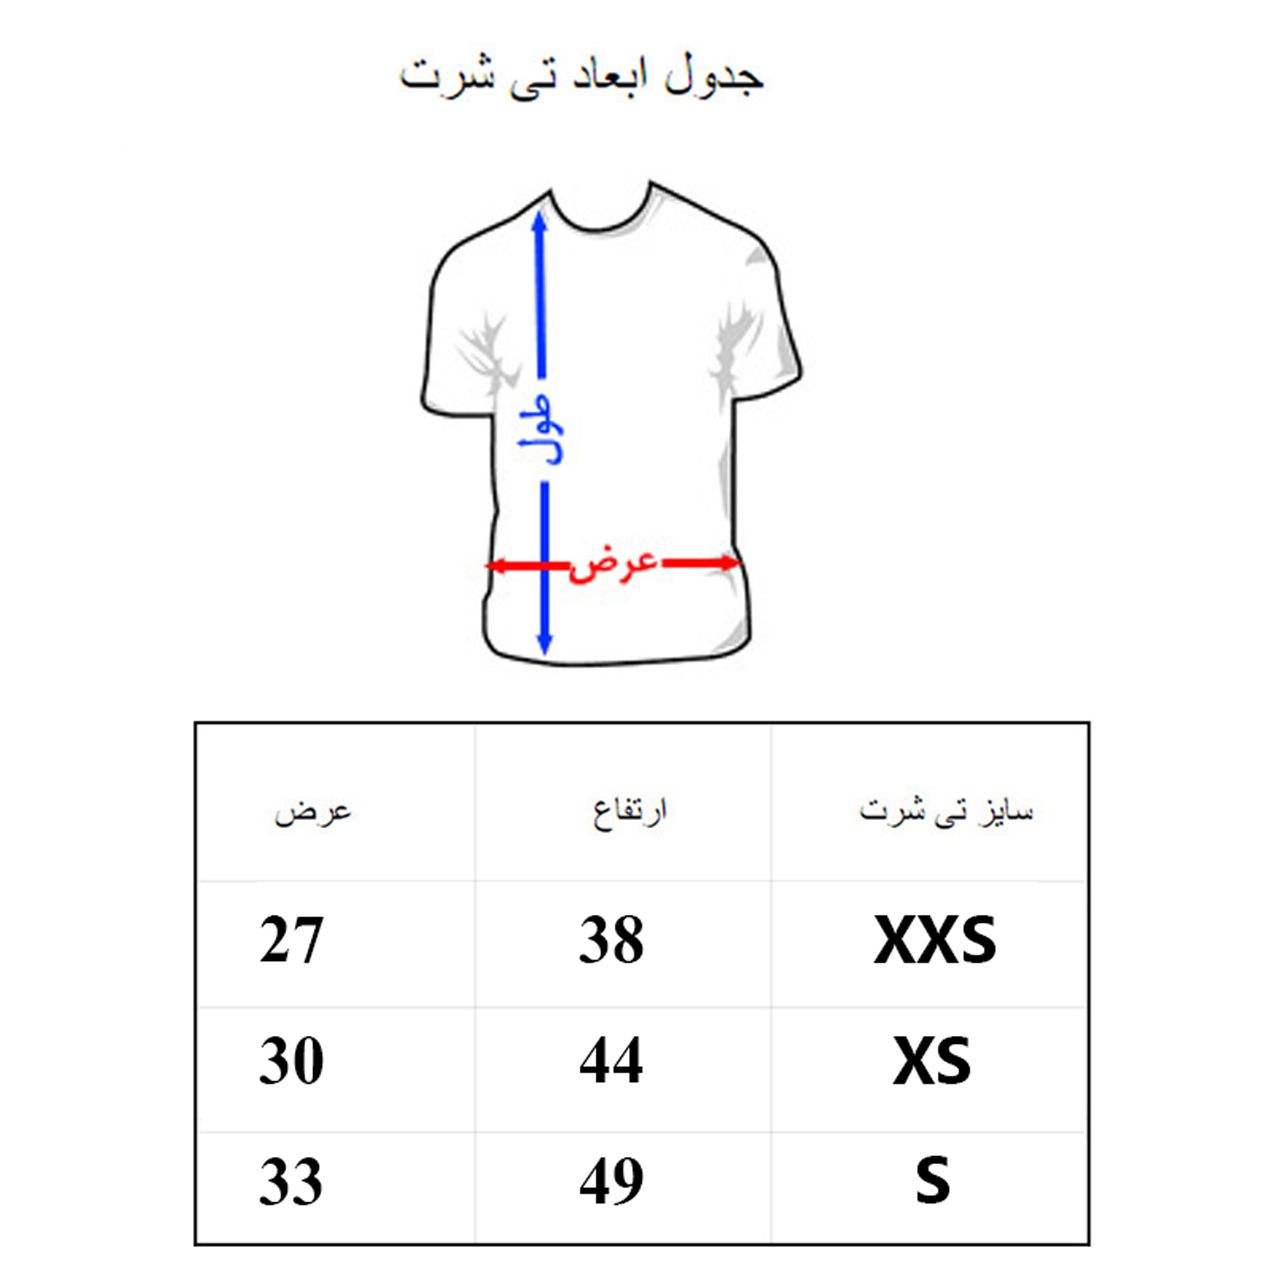 تی شرت آستین کوتاه بچگانه به رسم مدل تن تن کد 1134 -  - 2